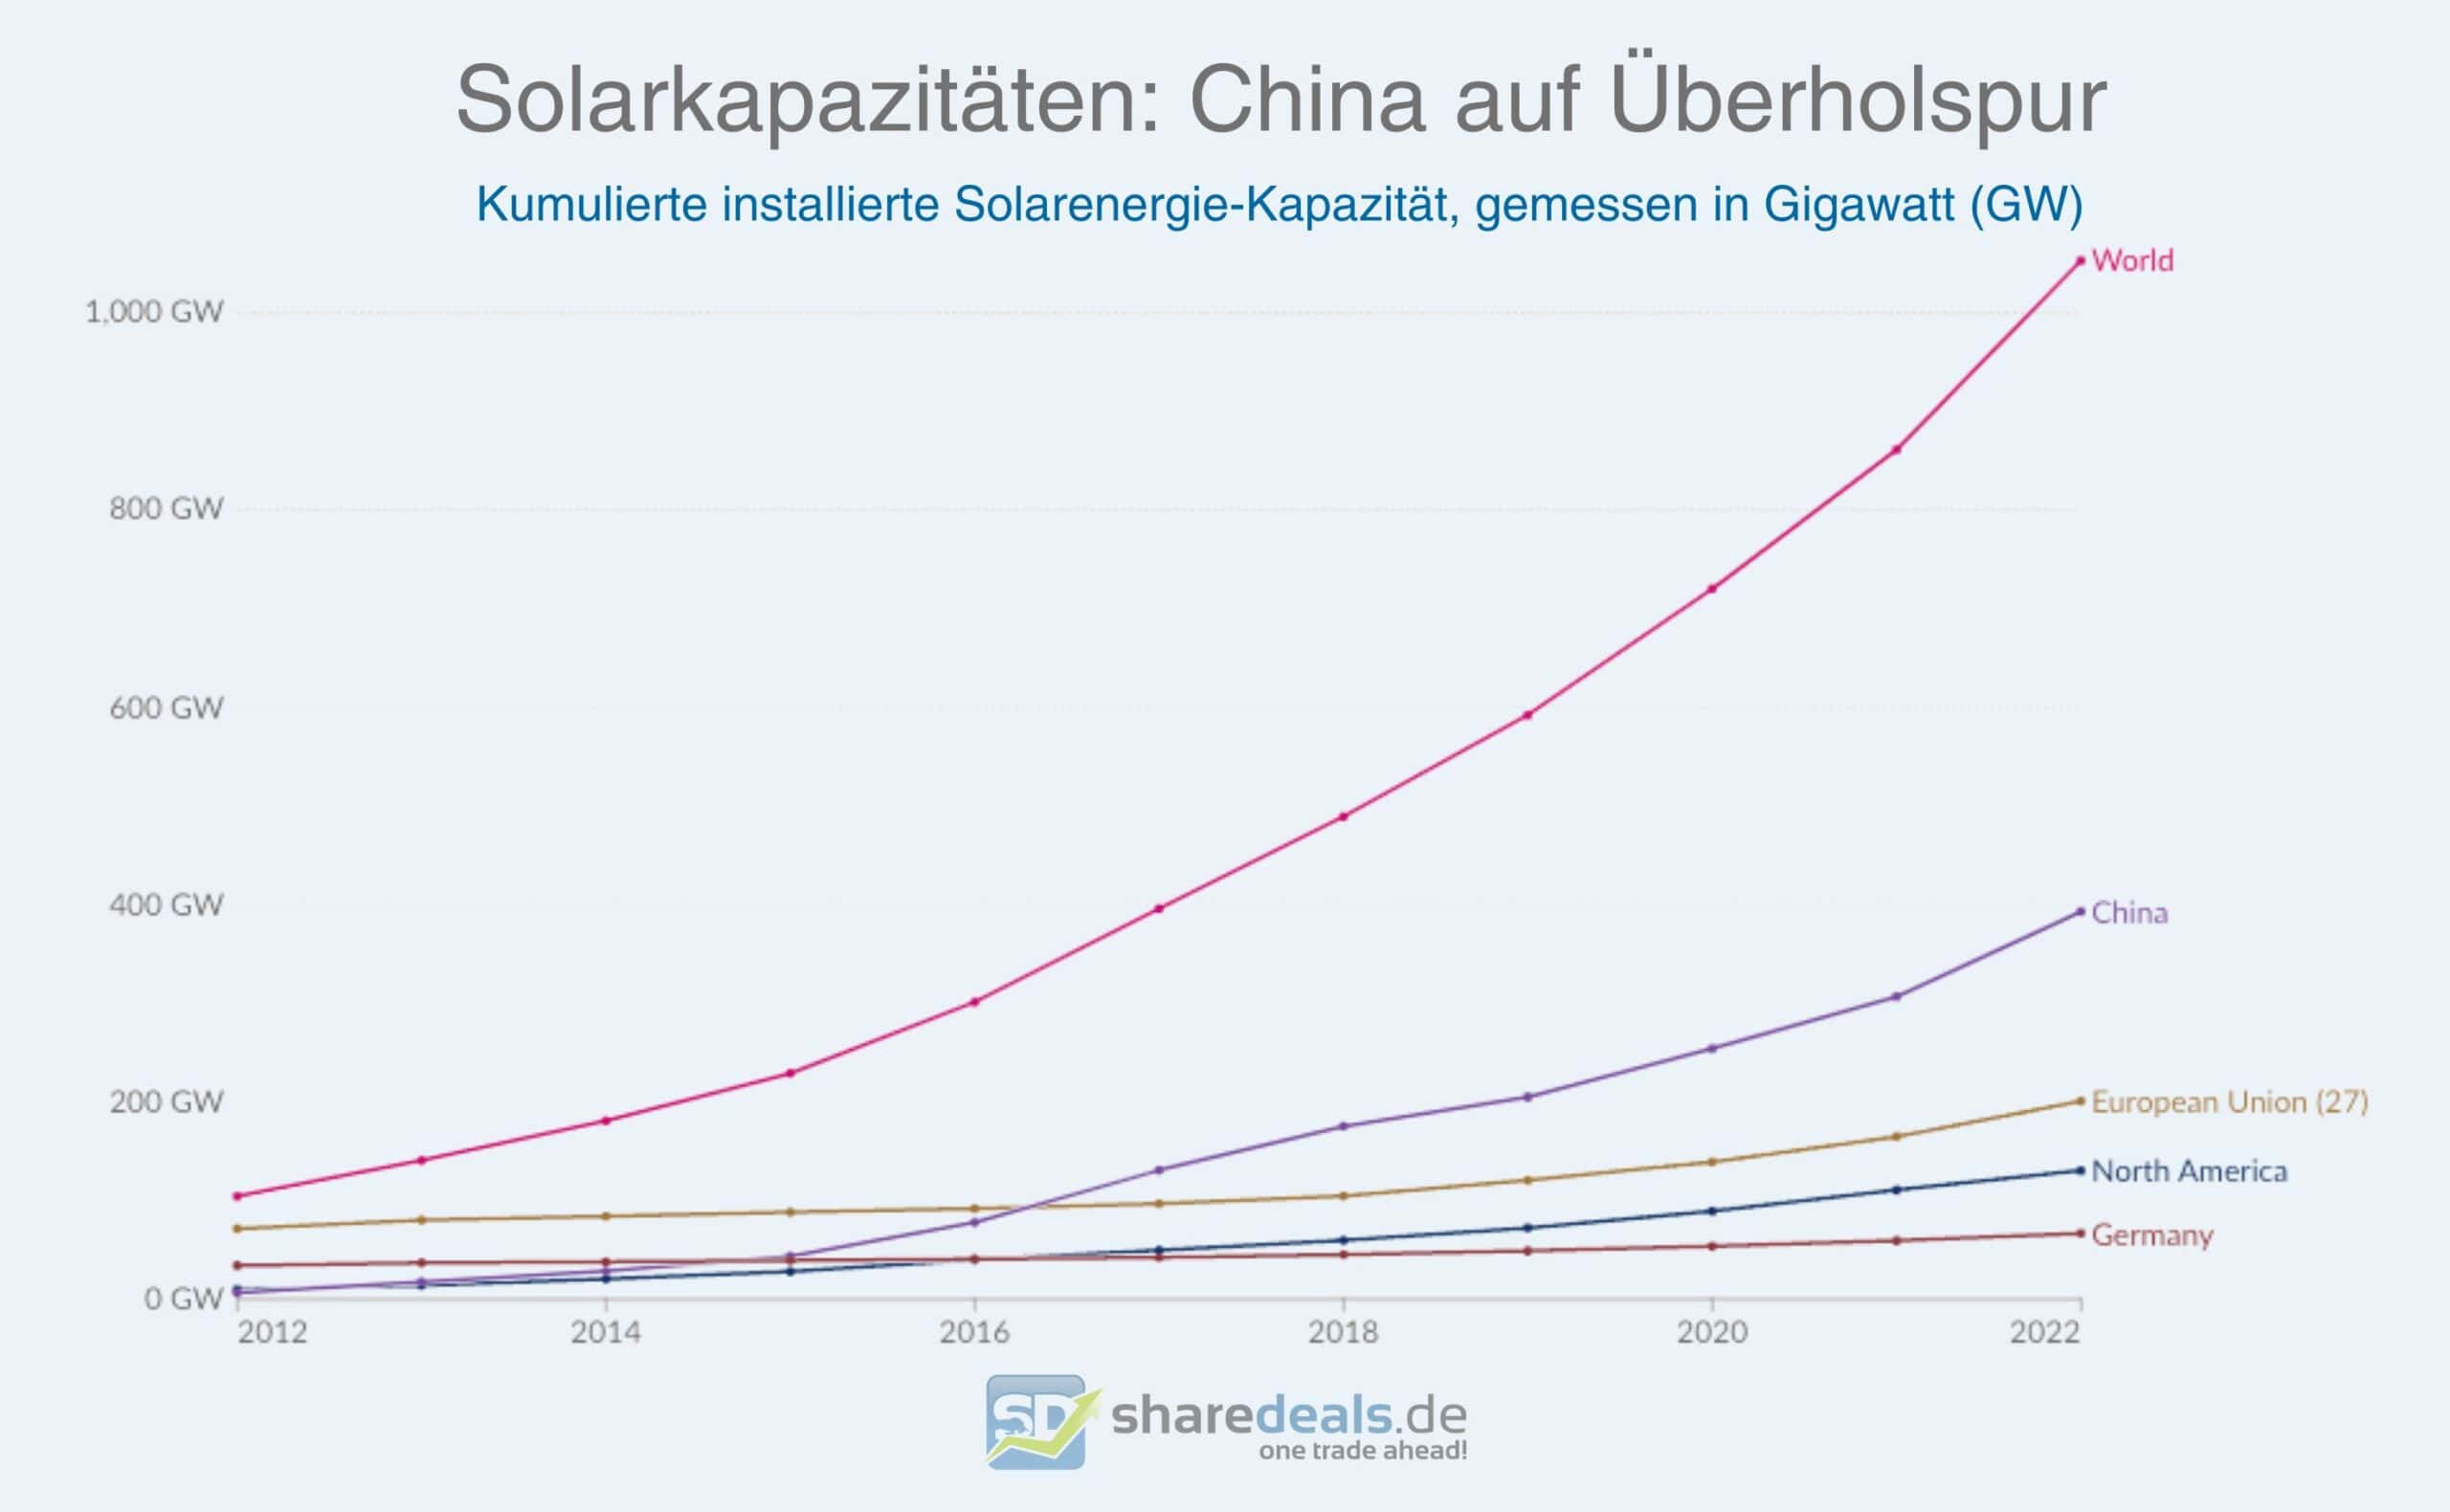 Entwicklung der Solarkapazitäten zwischen 2012 und 2022